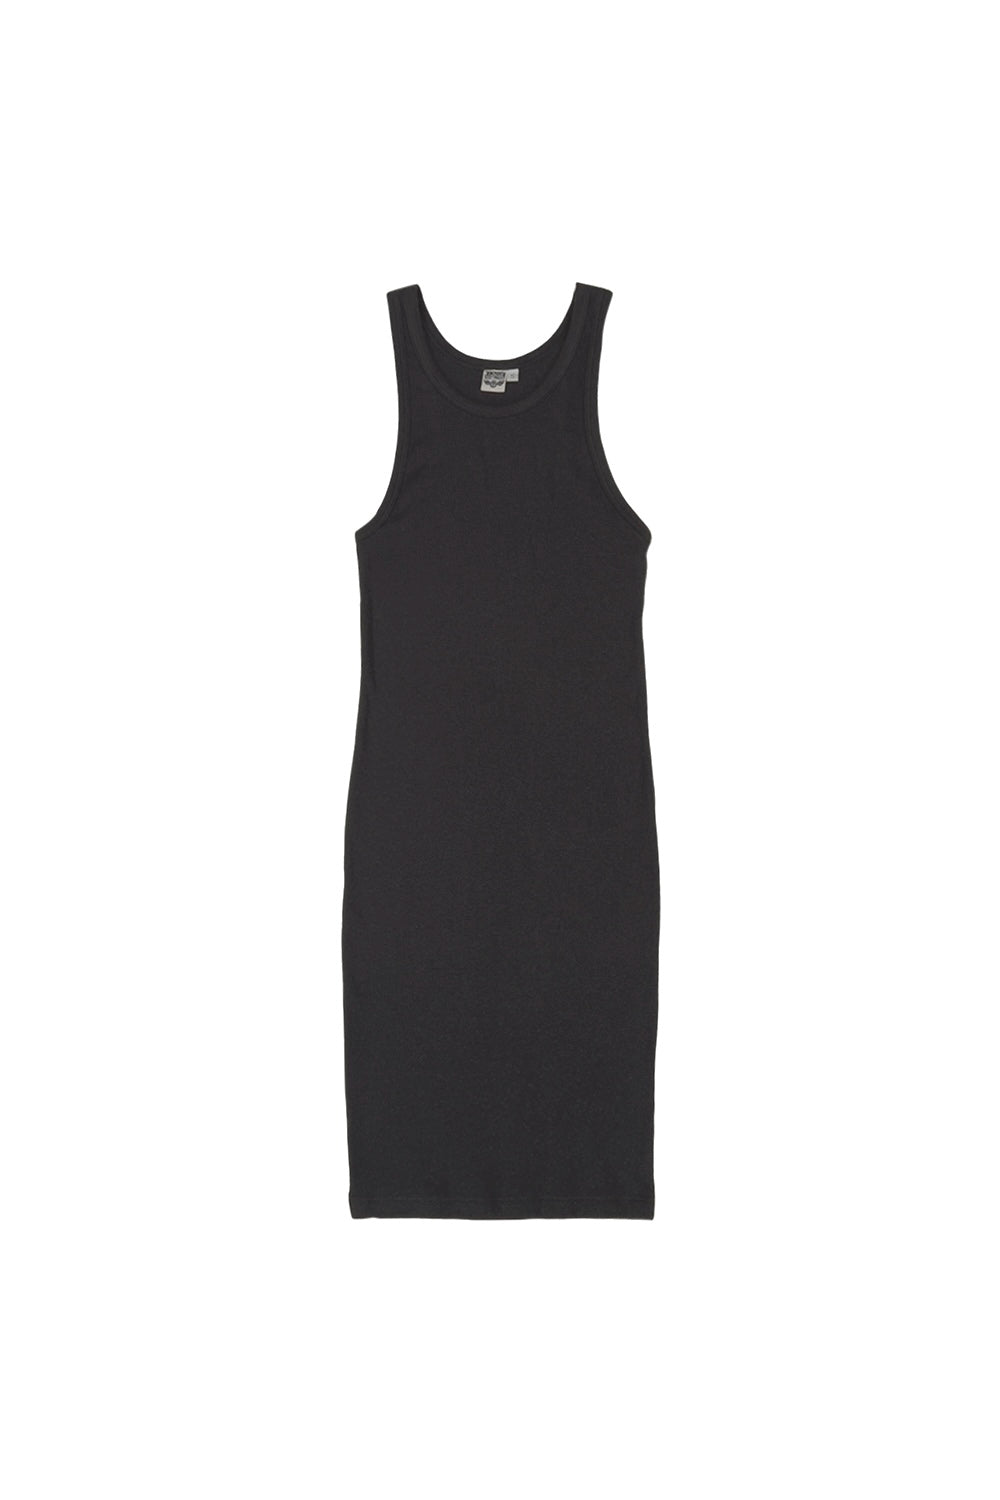 Daphne Dress | Jungmaven Hemp Clothing & Accessories / Color: Black